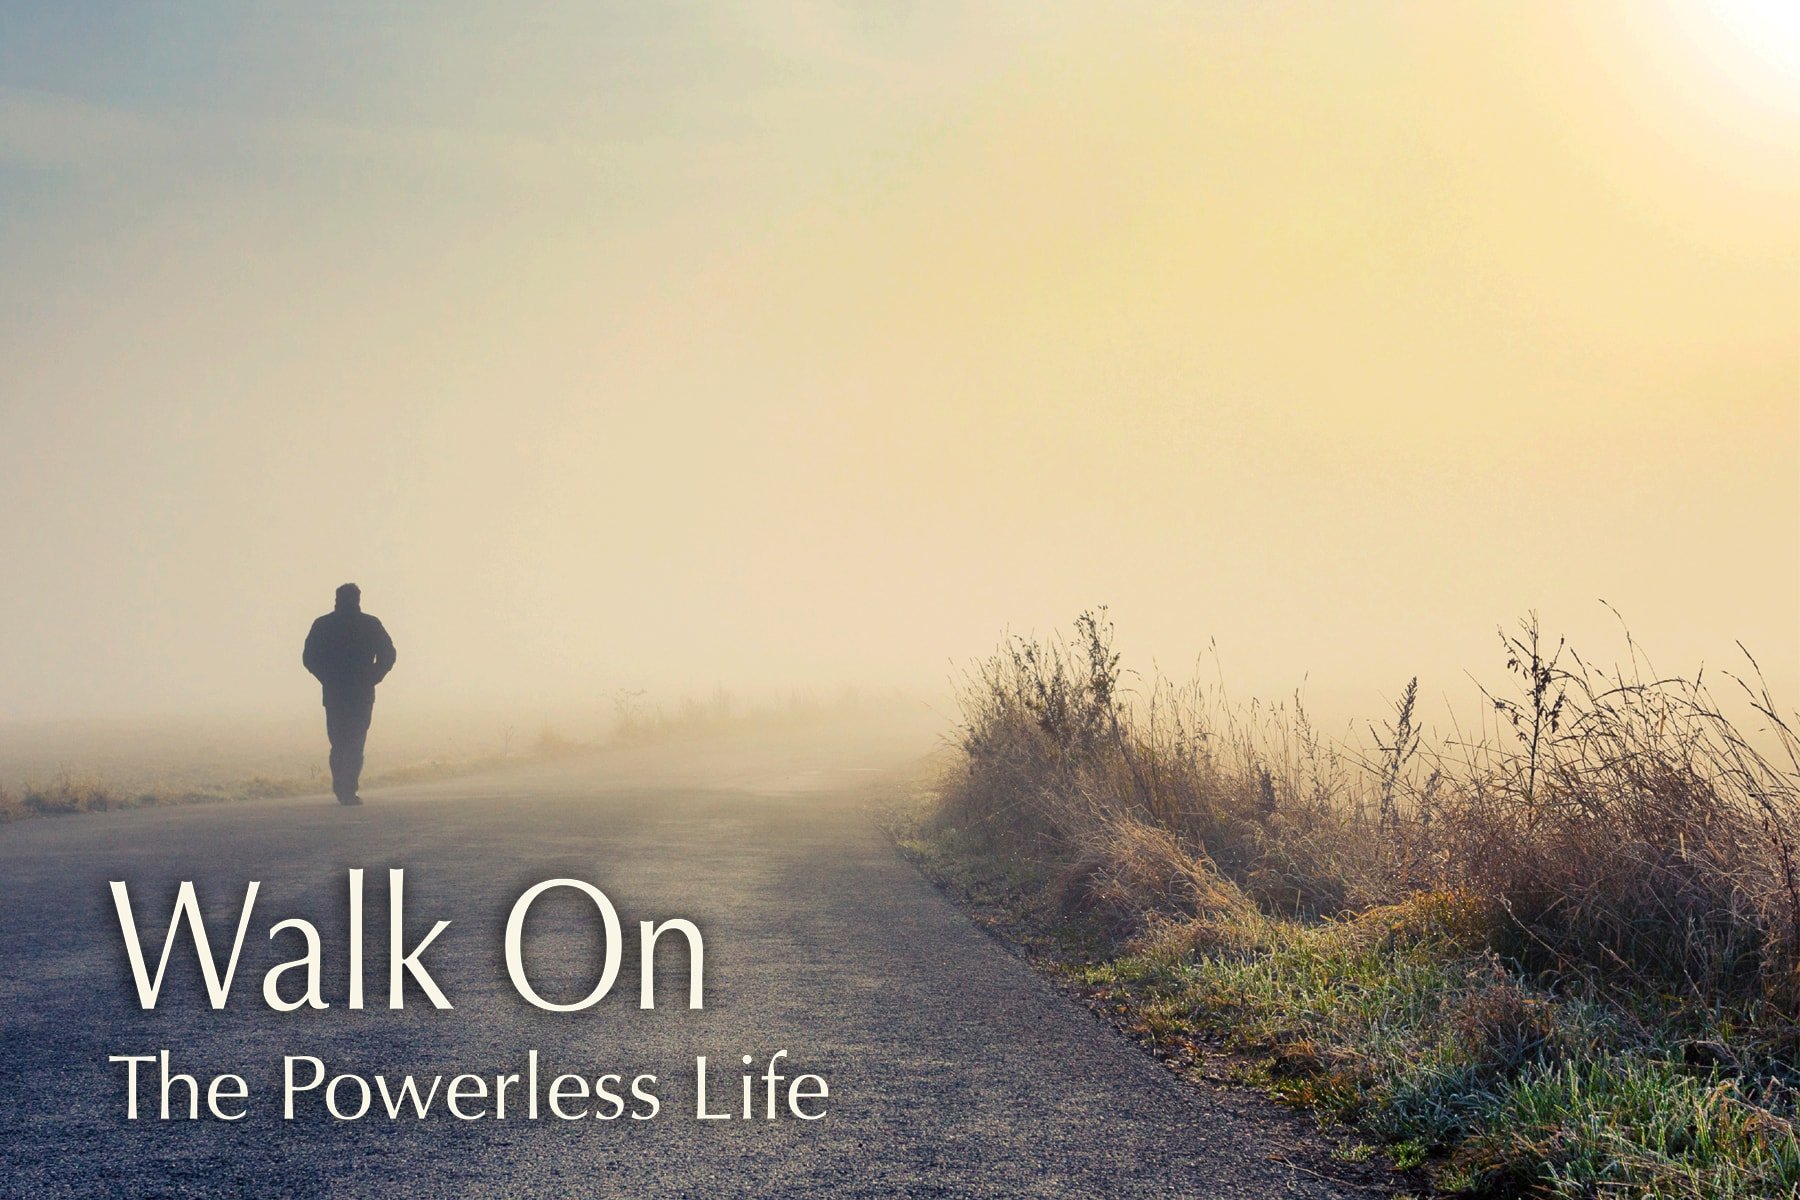 Mergi mai departe: Viața fără Putere<br>Septembrie 2015 - Iulie 2016